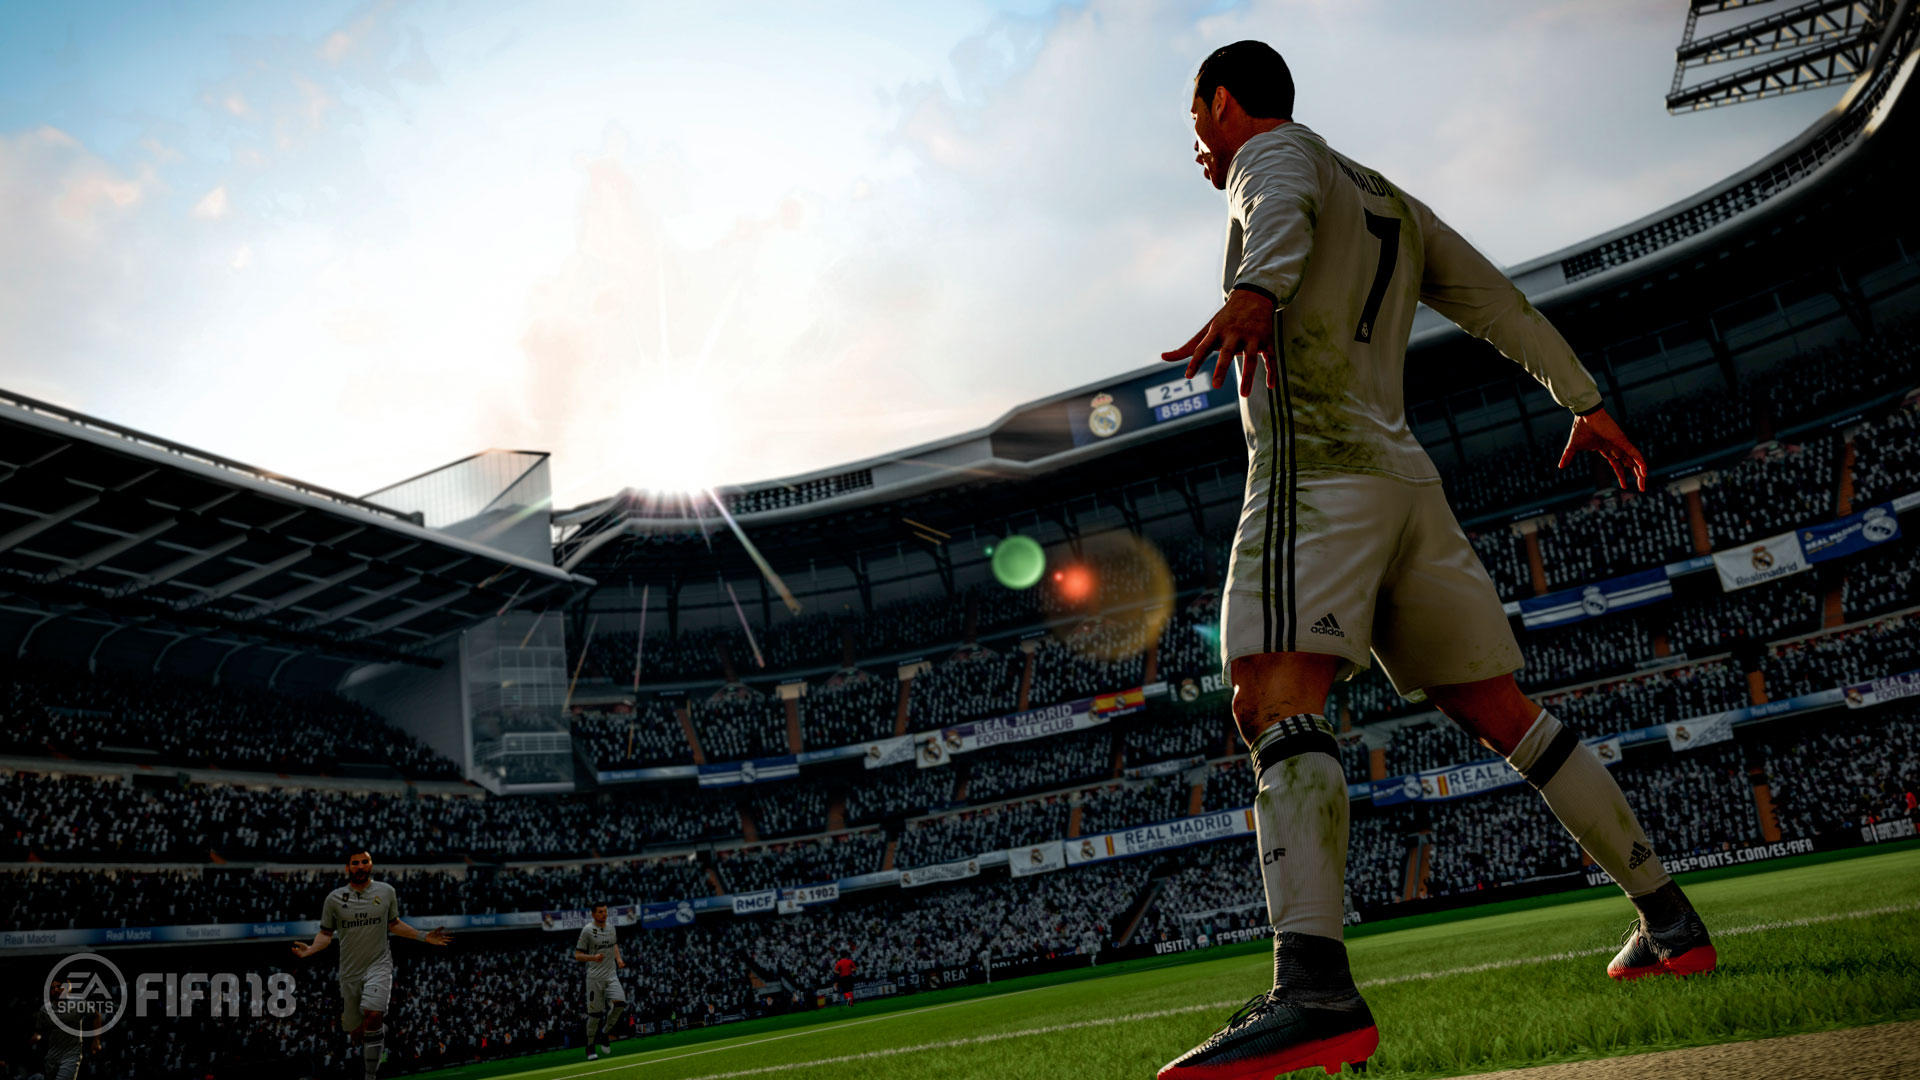 portada de fifa 18 - EA Sports ha publicado un top 50 de los jugadores, en está ocasión os dejamos con el top 10 de jugadores de FIFA 18.